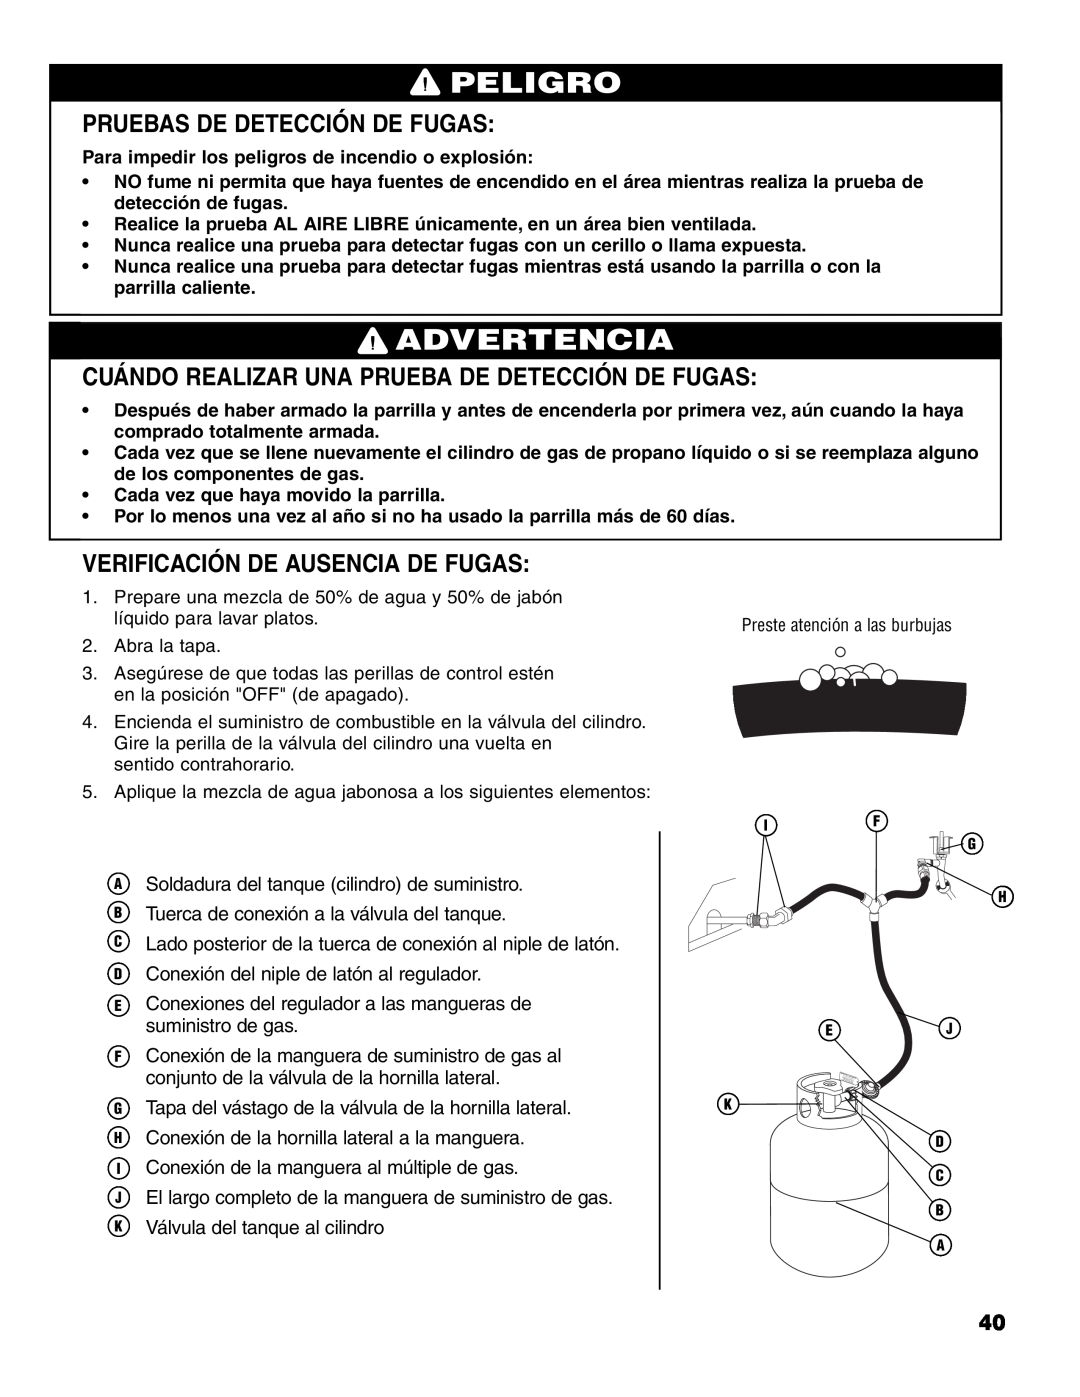 Brinkmann 7541 Series owner manual Pruebas De Detección De Fugas, Cuándo Realizar Una Prueba De Detección De Fugas, Peligro 